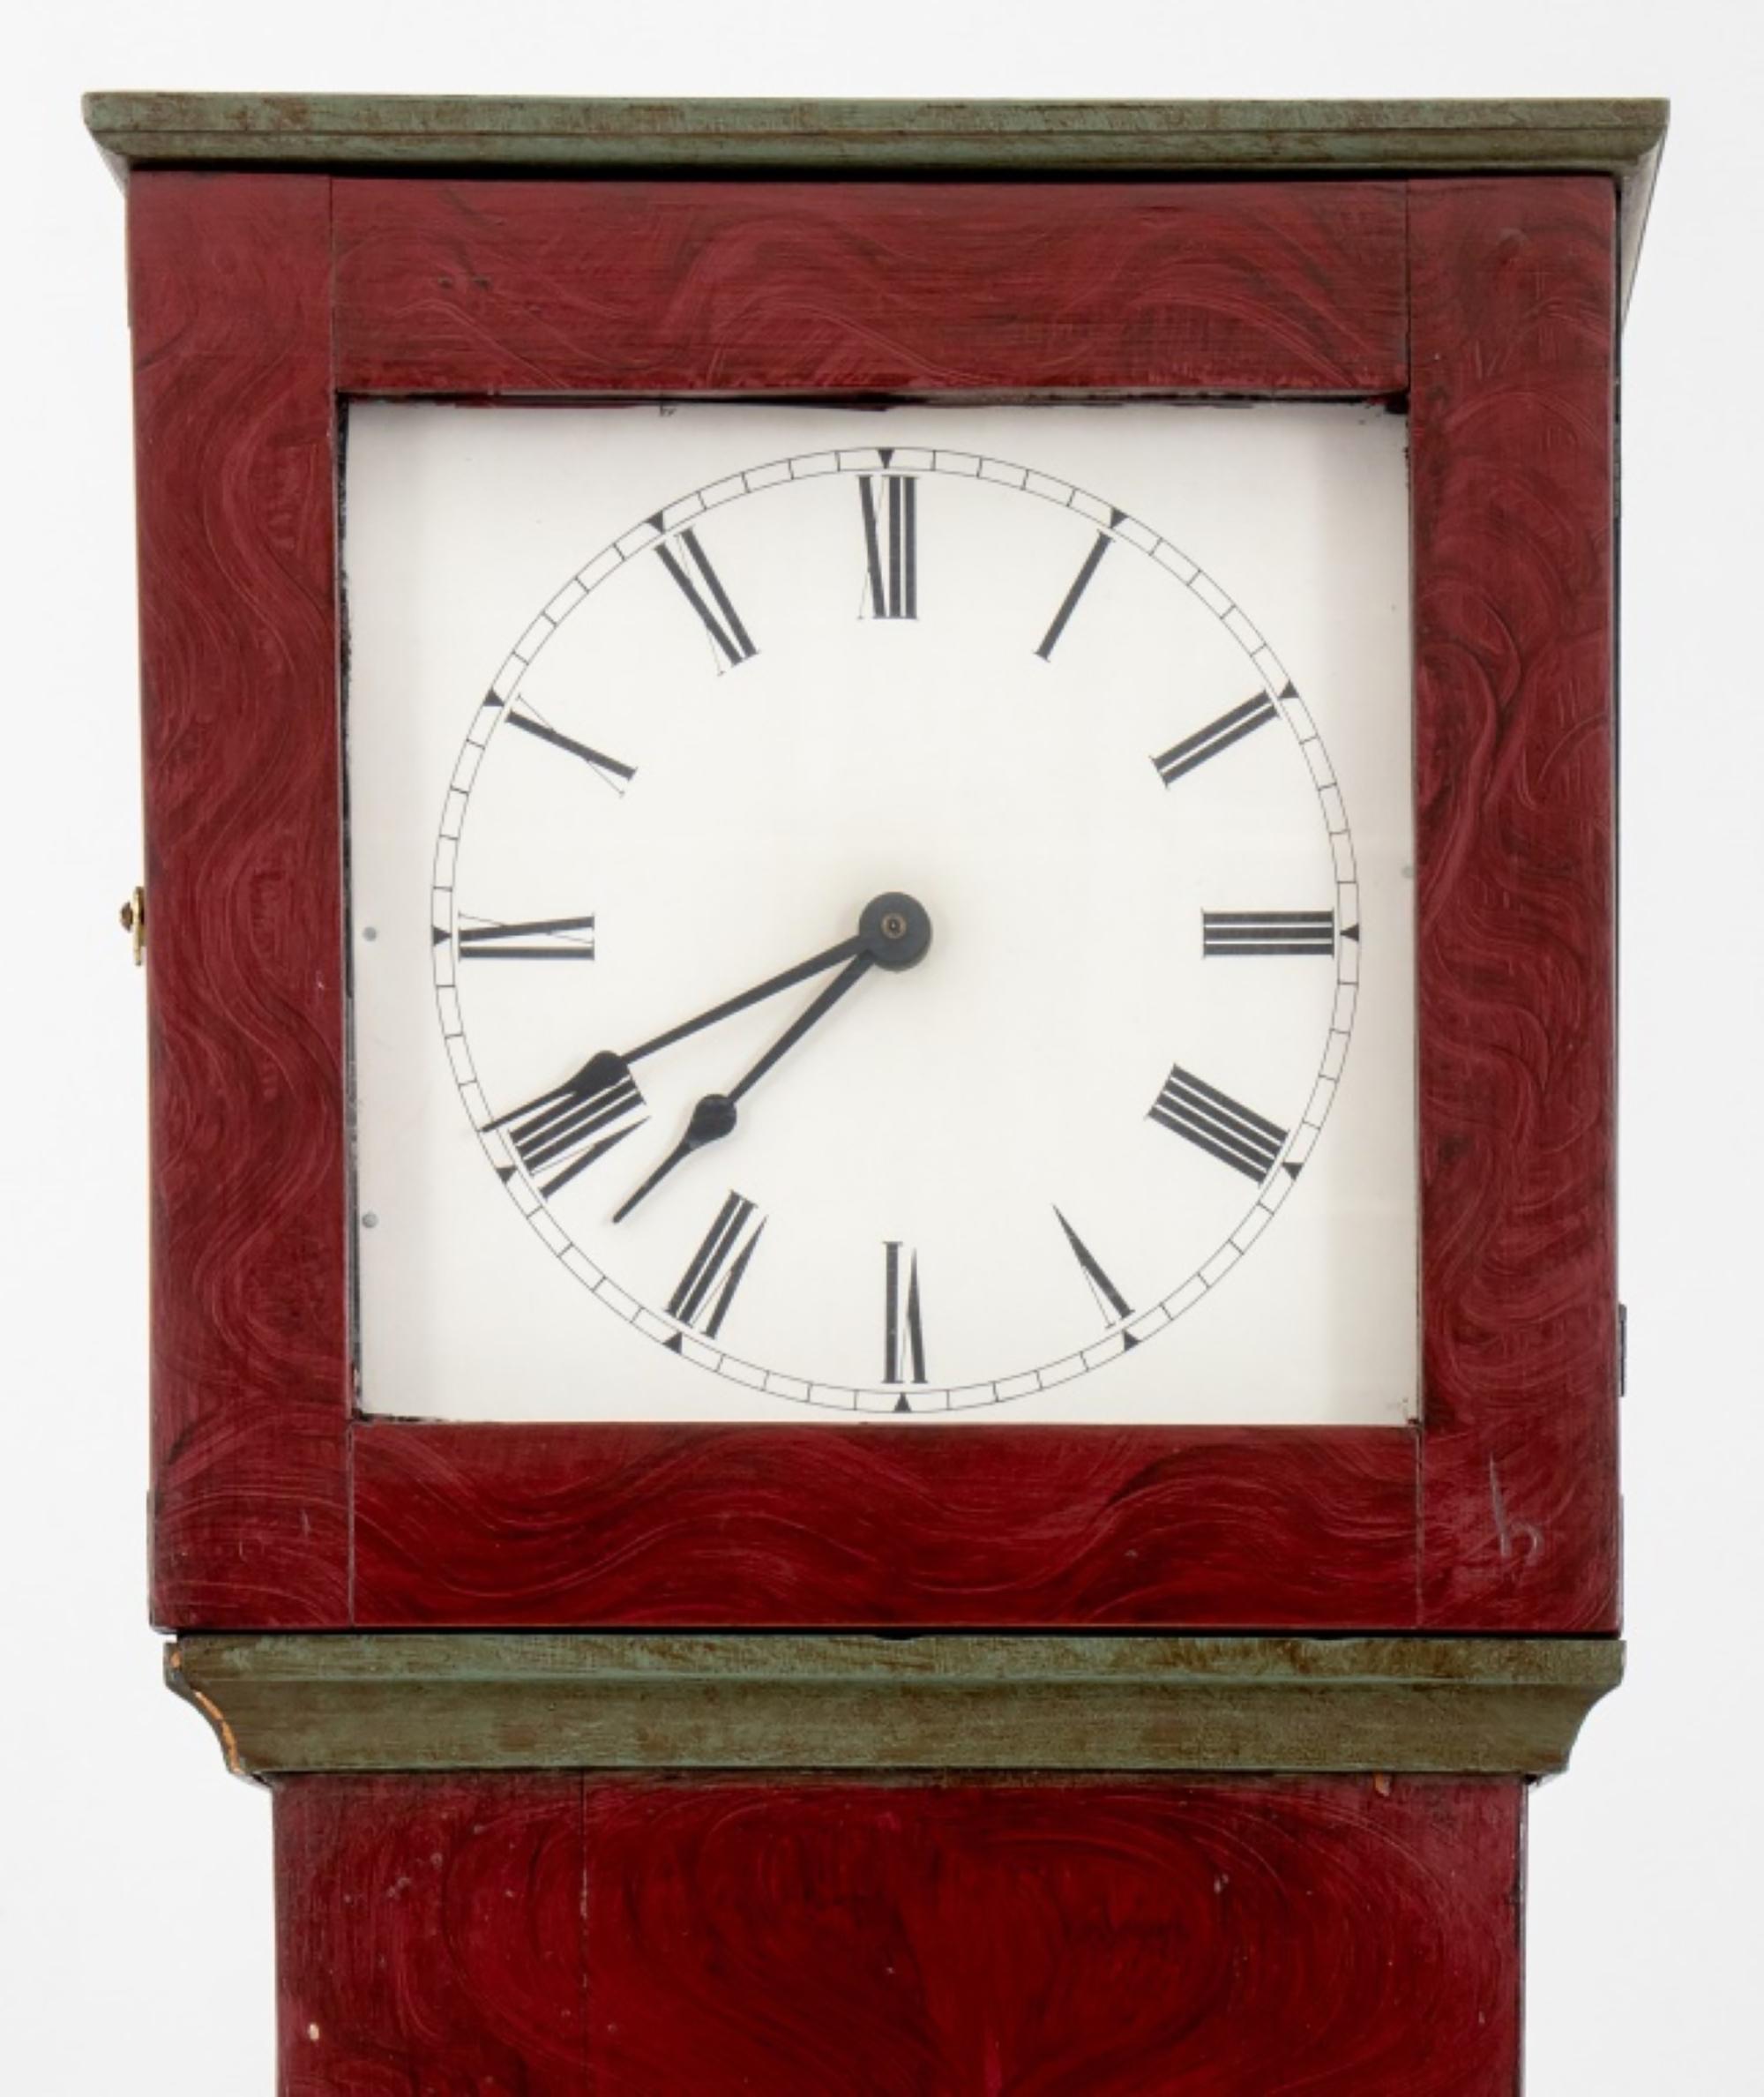 Horloge grand-père à grande caisse de style Shakers du 20e siècle, peinte en rouge et noir. Voici les détails :

Style : Style Shaker
Type : Horloge grand-père à grande caisse
Période : 20ème siècle
Finition : Peinture rouge et noire
Provenance :